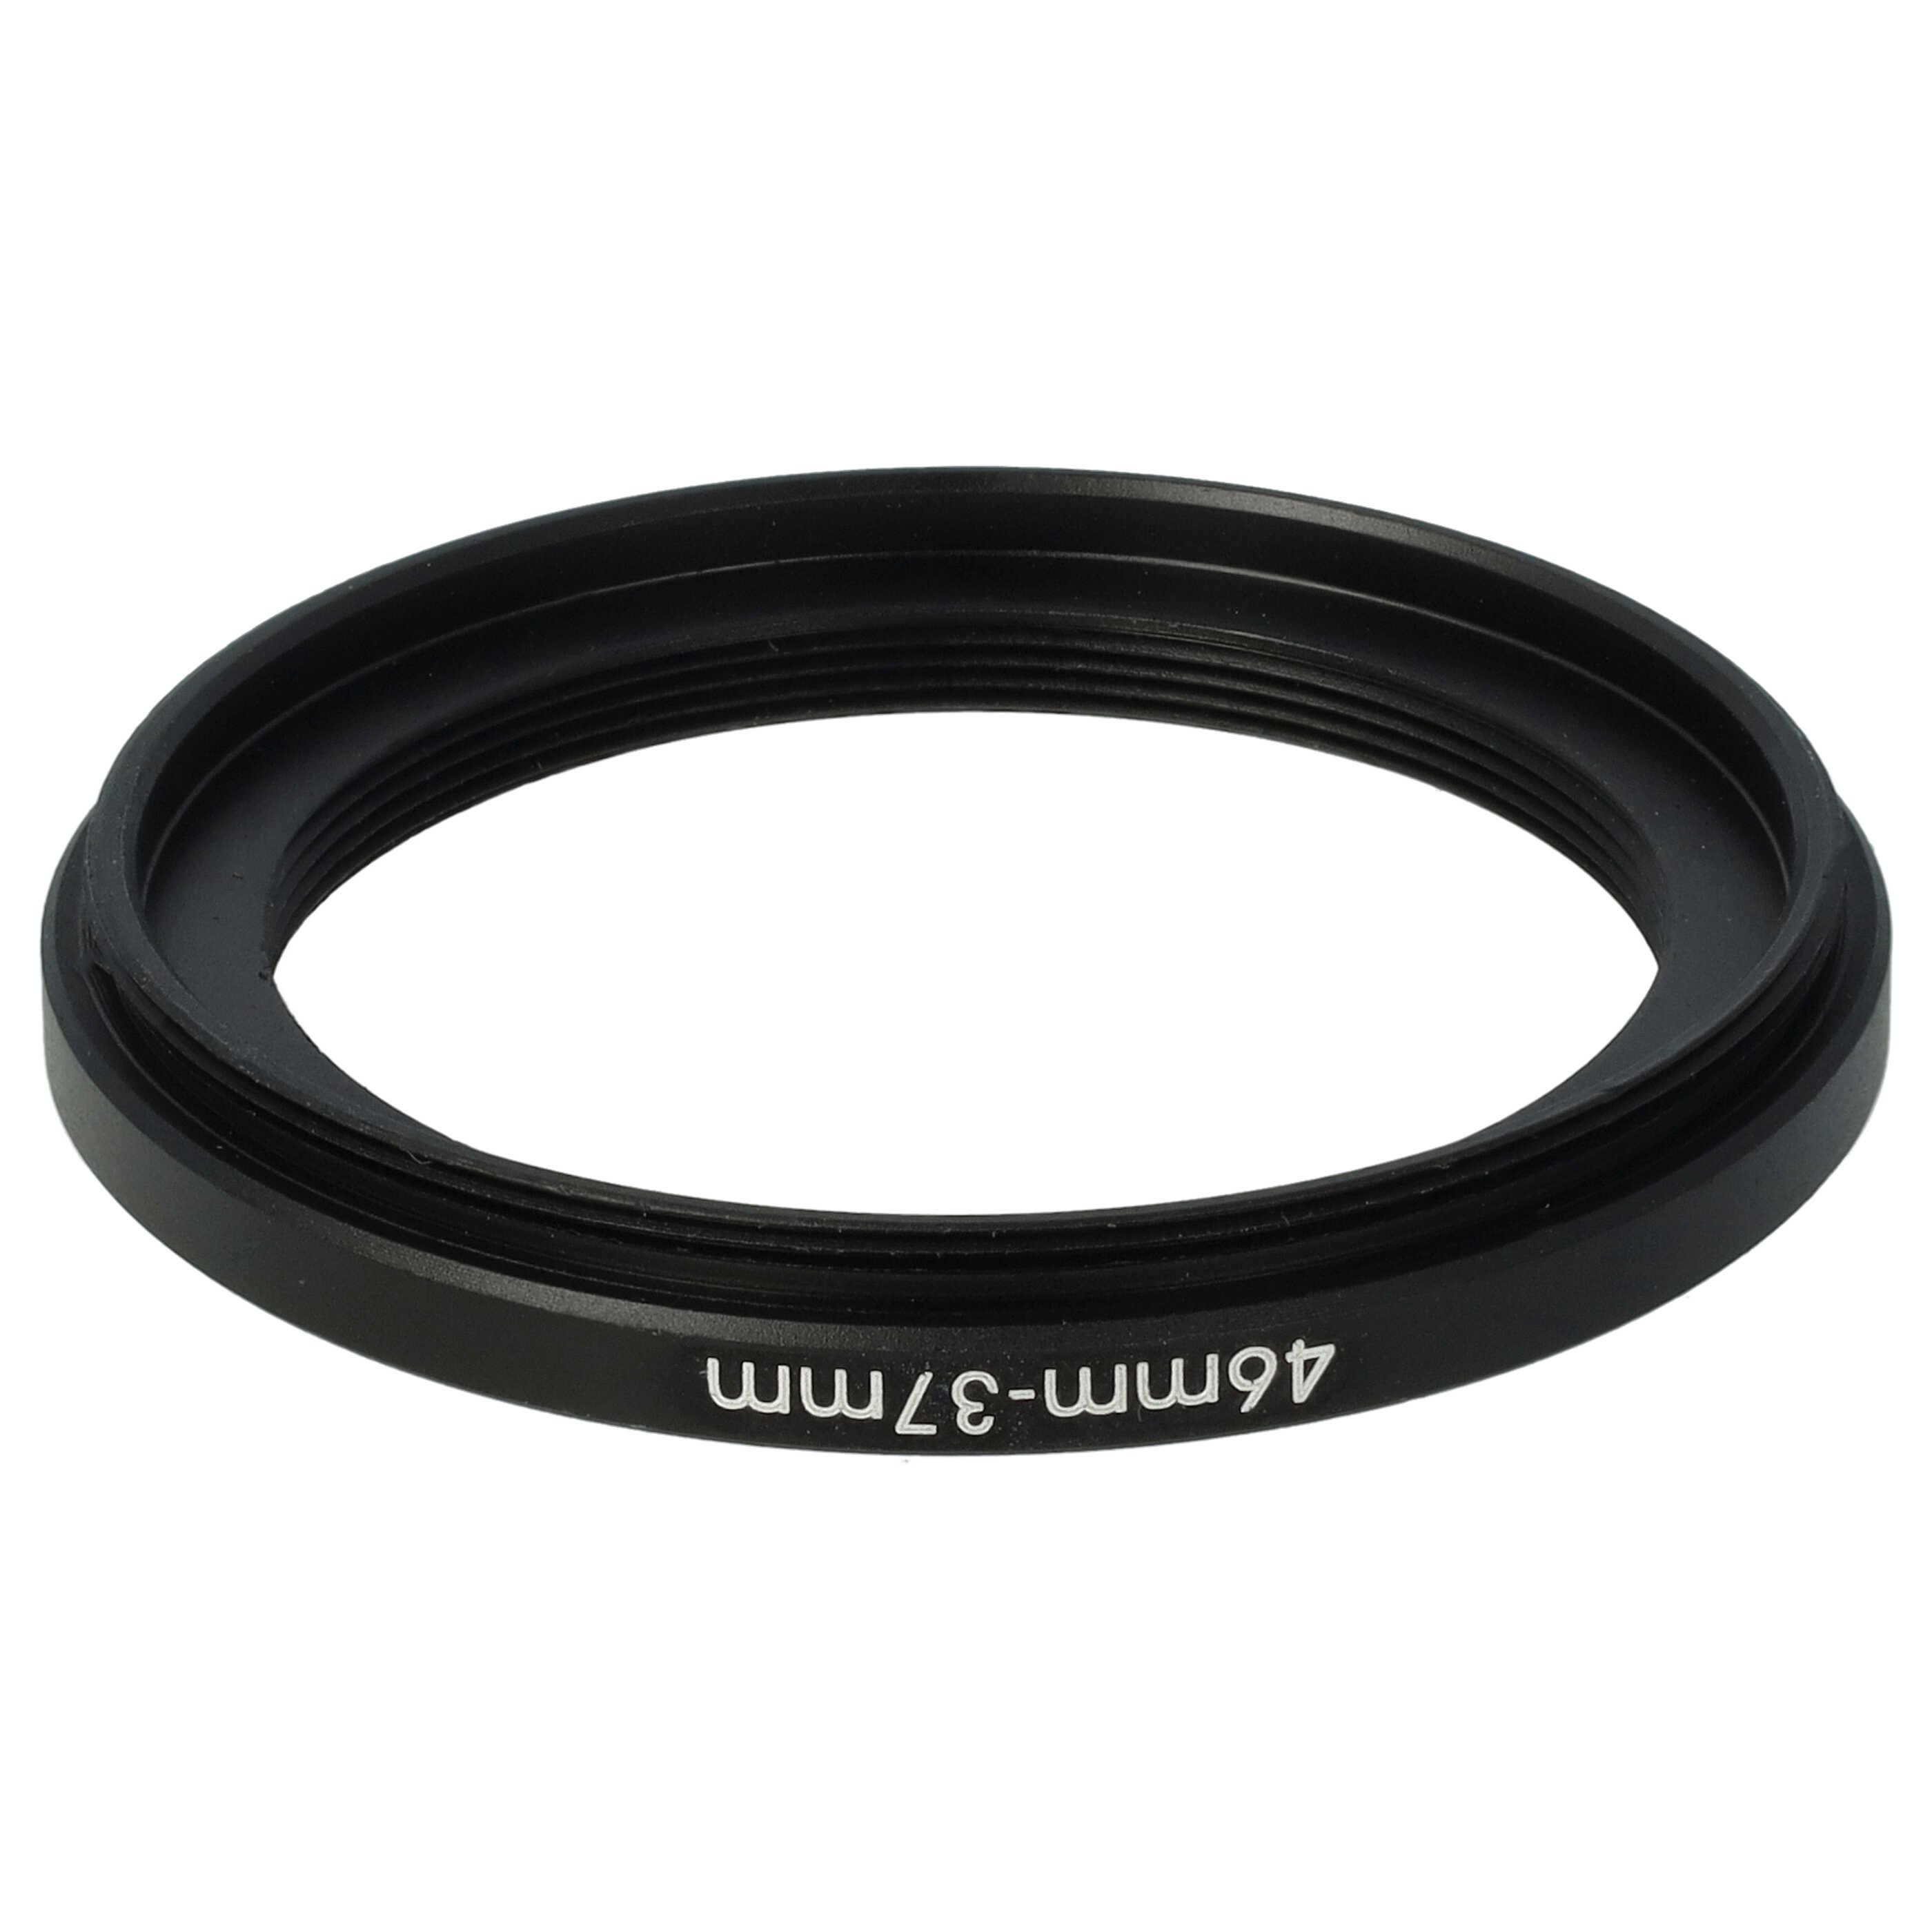 Step-Down-Ring Adapter von 46 mm auf 37 mm passend für Kamera Objektiv - Filteradapter, Metall, schwarz